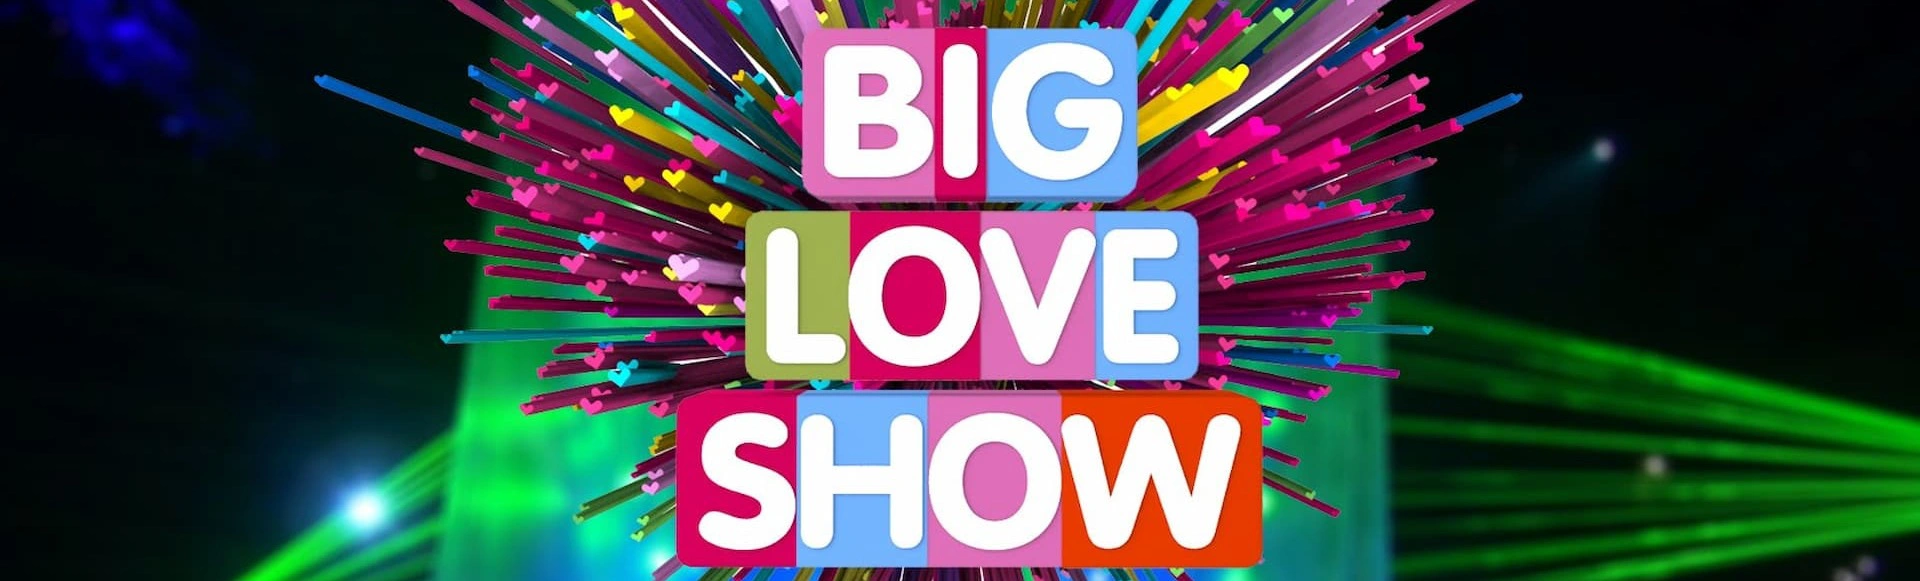 Big Love Show в Казани